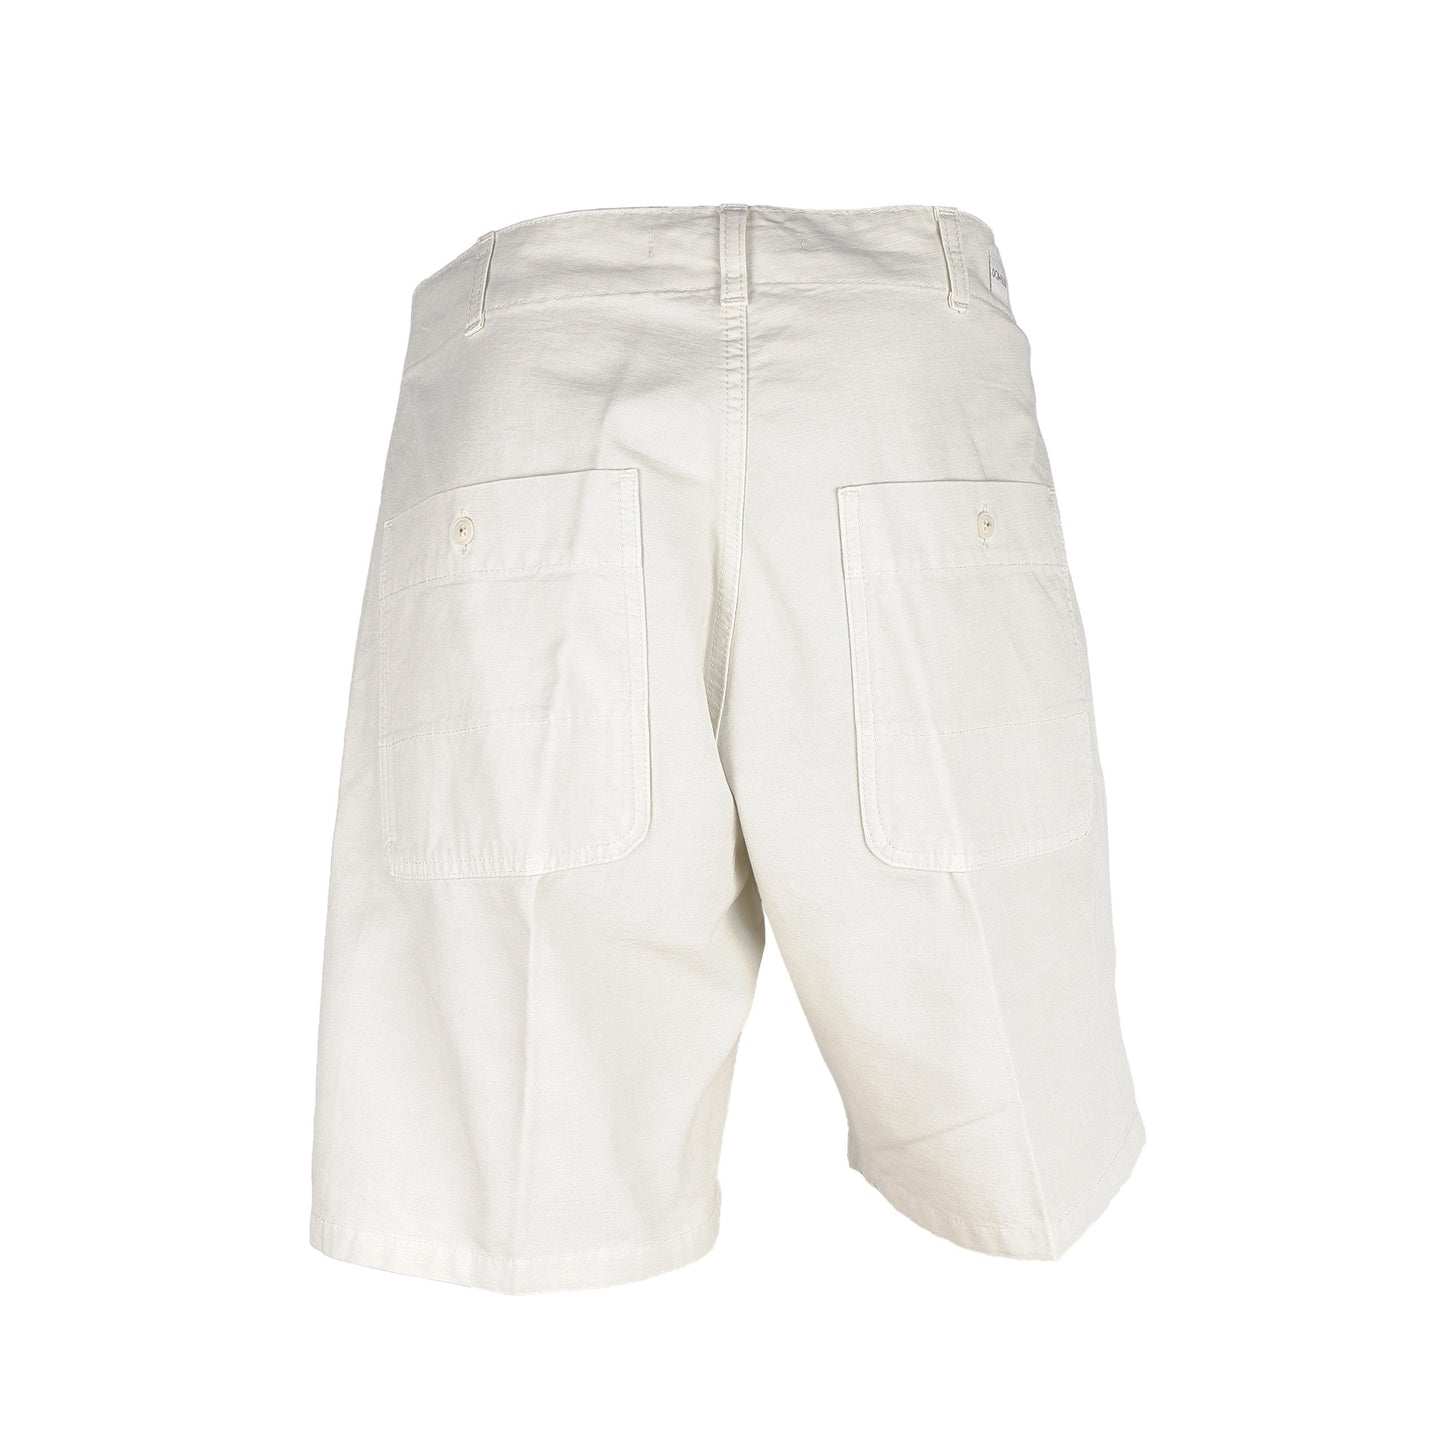 Don The Fuller Elegant White Bermuda Shorts - Summer Chic